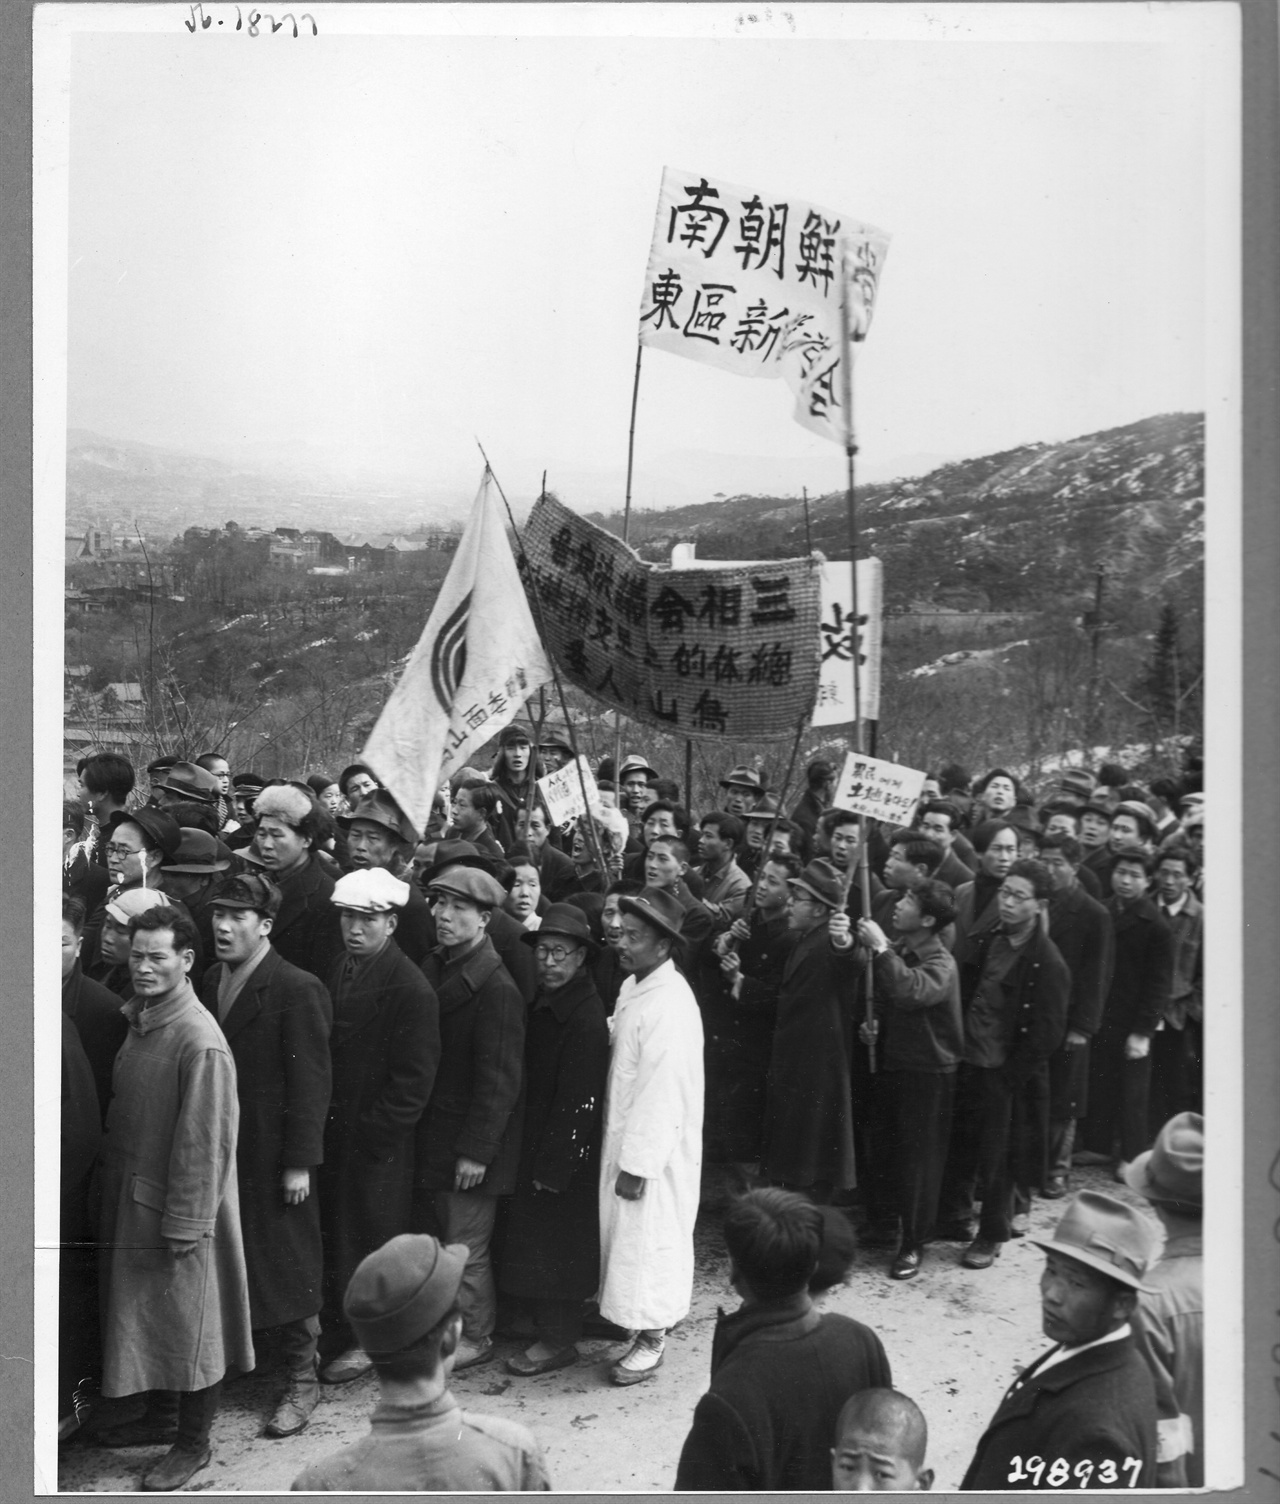 1946. 3. 1. 서울. 신탁통치 지지 궐기 대회로 가마니를 펼쳐 구호를 쓴 프래카드가 이색적이다